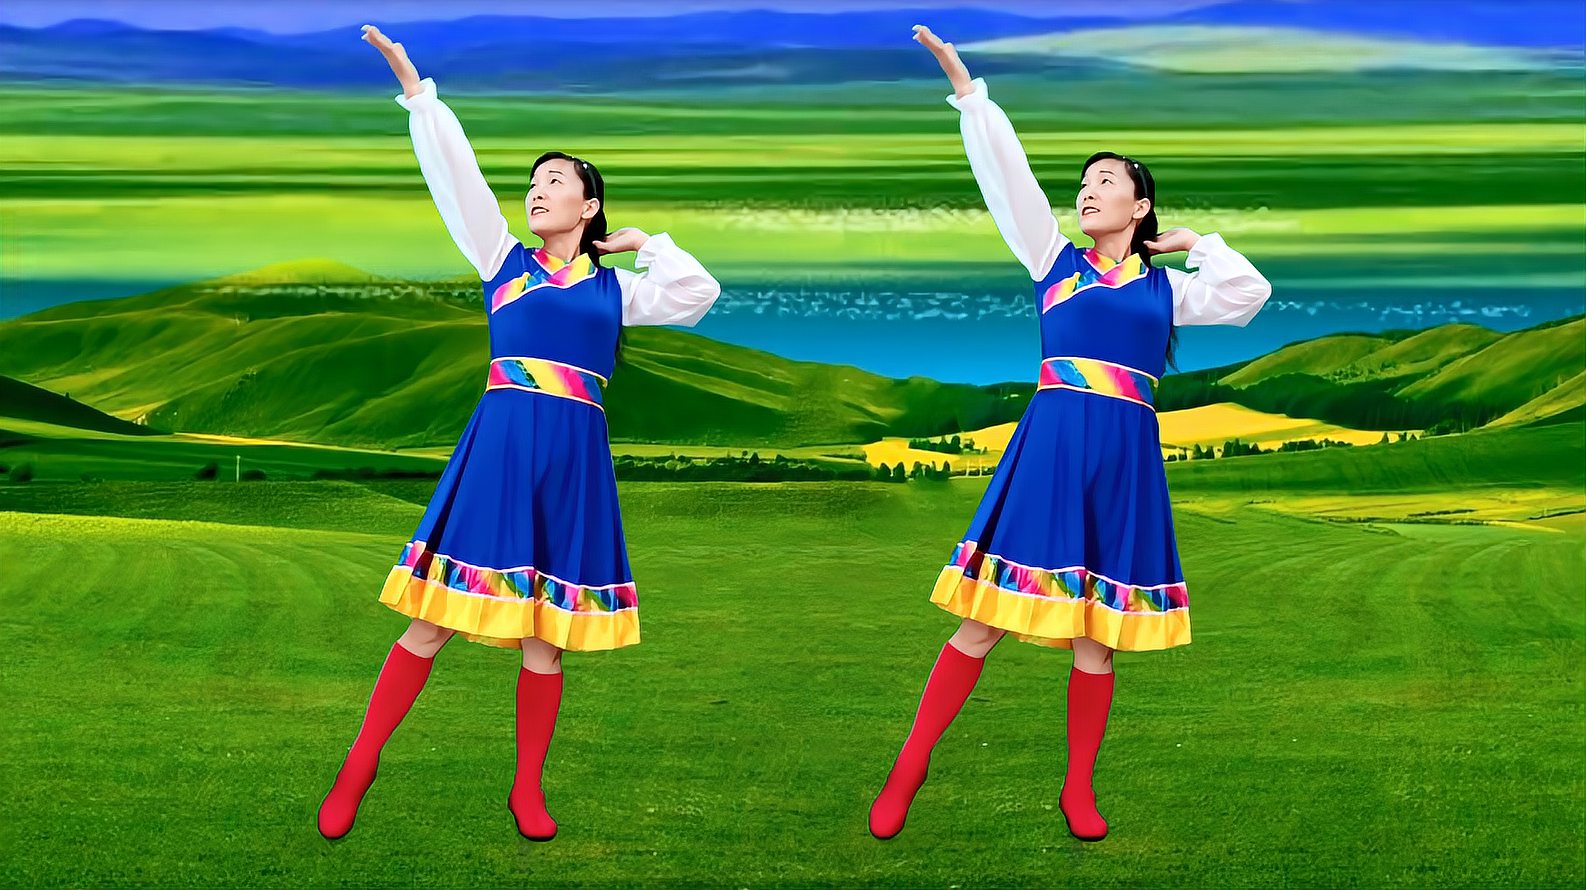 藏族风情广场舞《吉祥》优美大气,歌声嘹亮豪迈